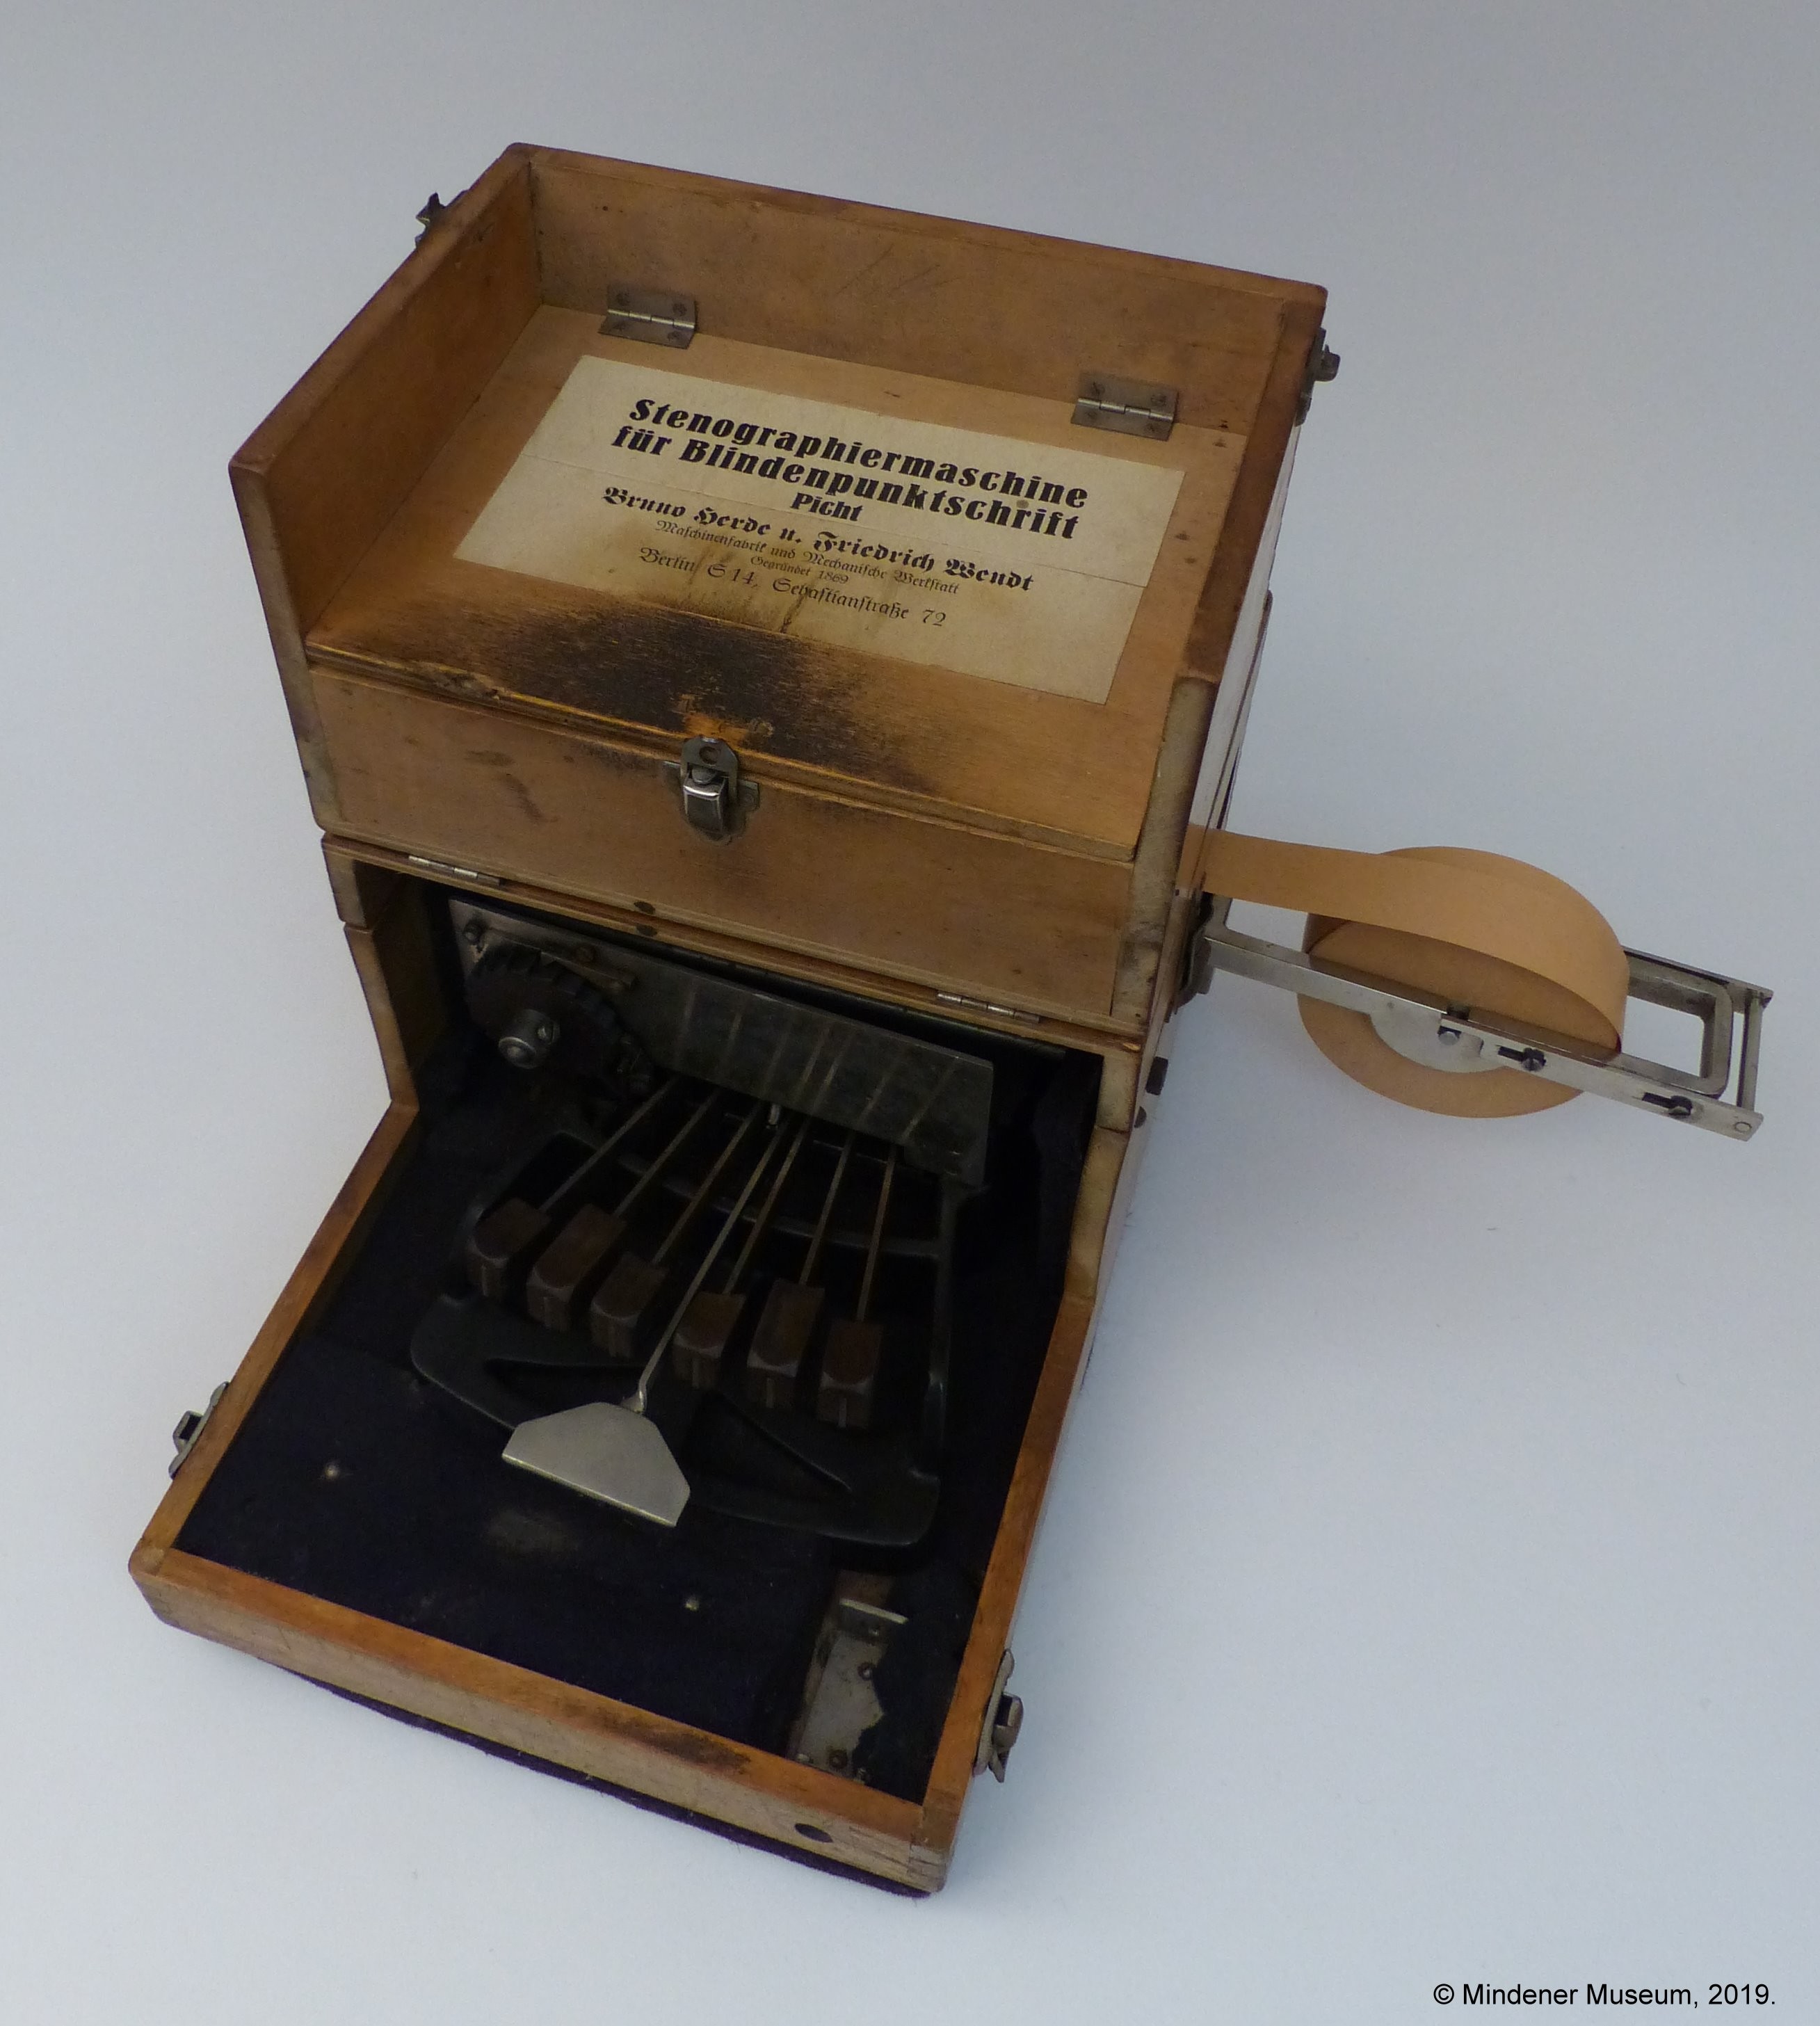 Stenographiermaschine für Blindenpunktschrift Picht (Mindener Museum RR-R)